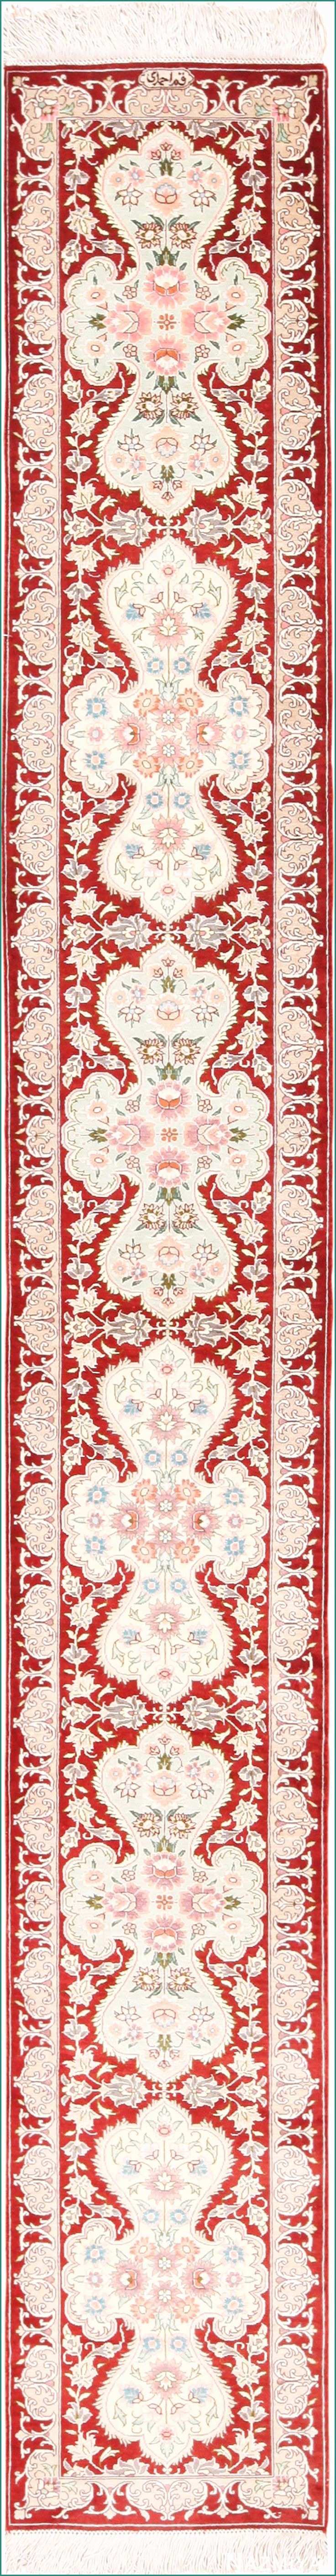 Tappeti orientali On Line E 7 Fantastiche Immagini Su Carpets Su Pinterest